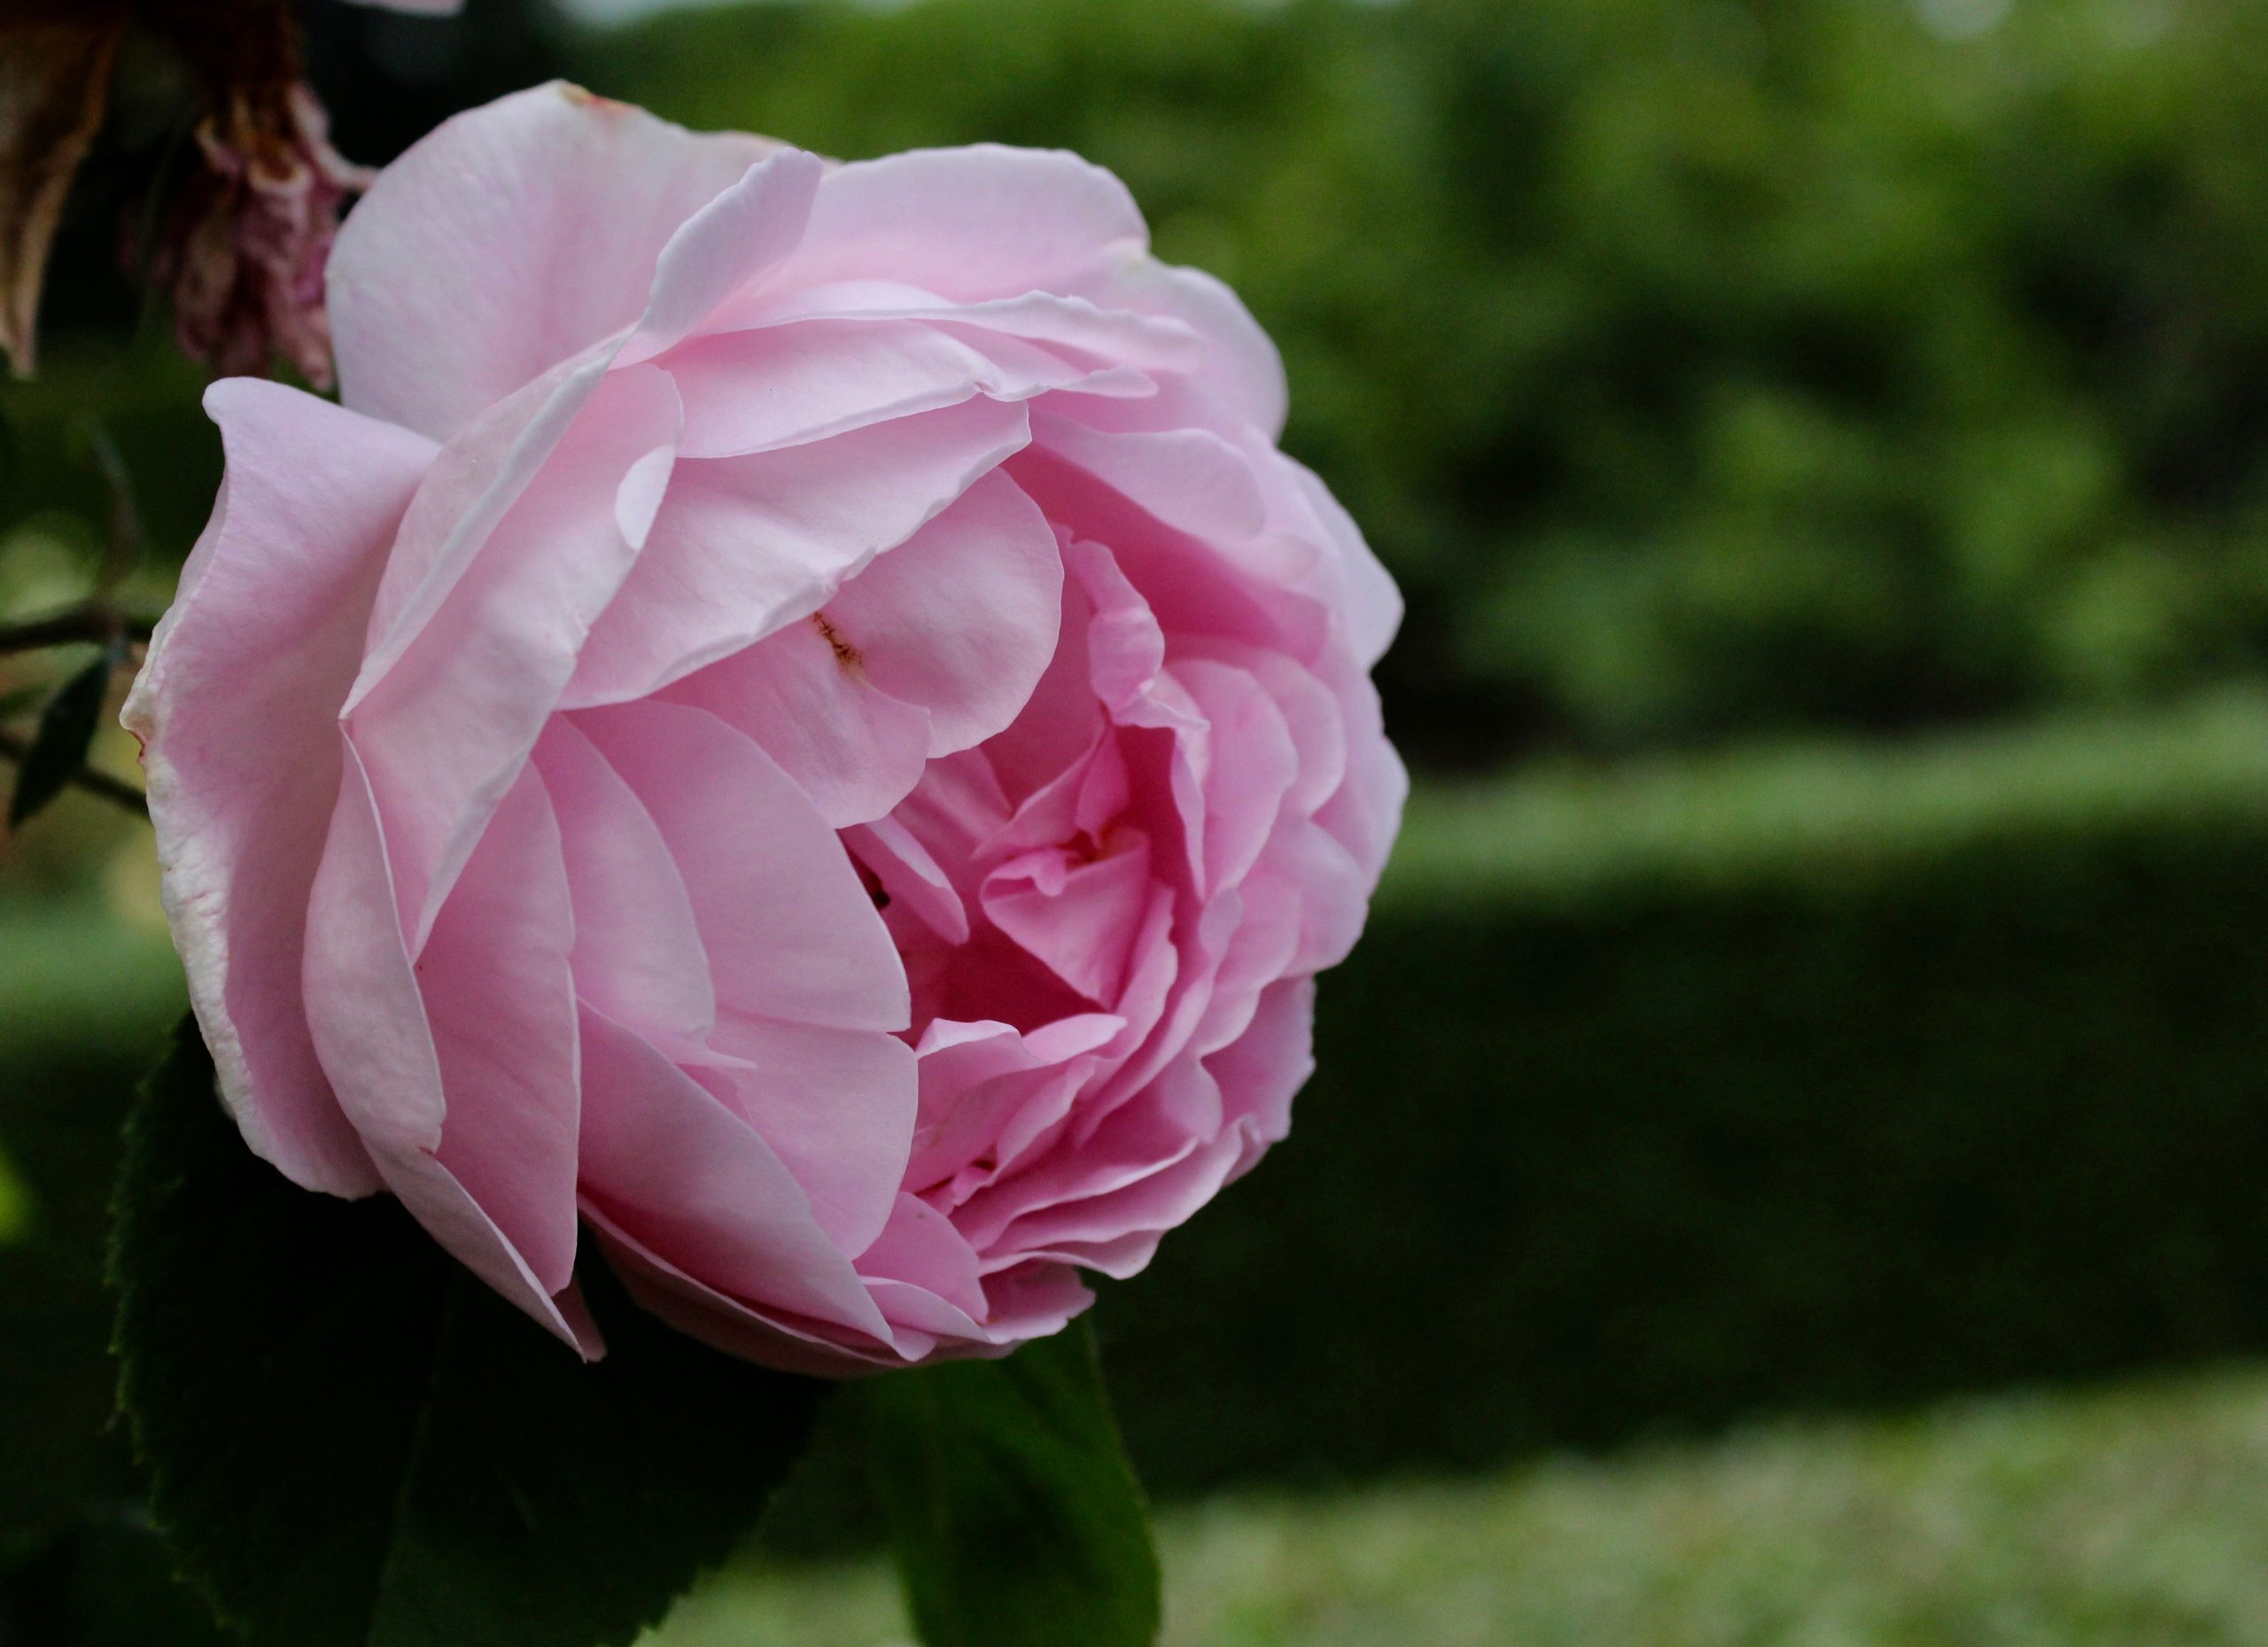 Rosa rosor ros rose pink roses Fredriksdals trädgårdar rosenträdgård rosegarden